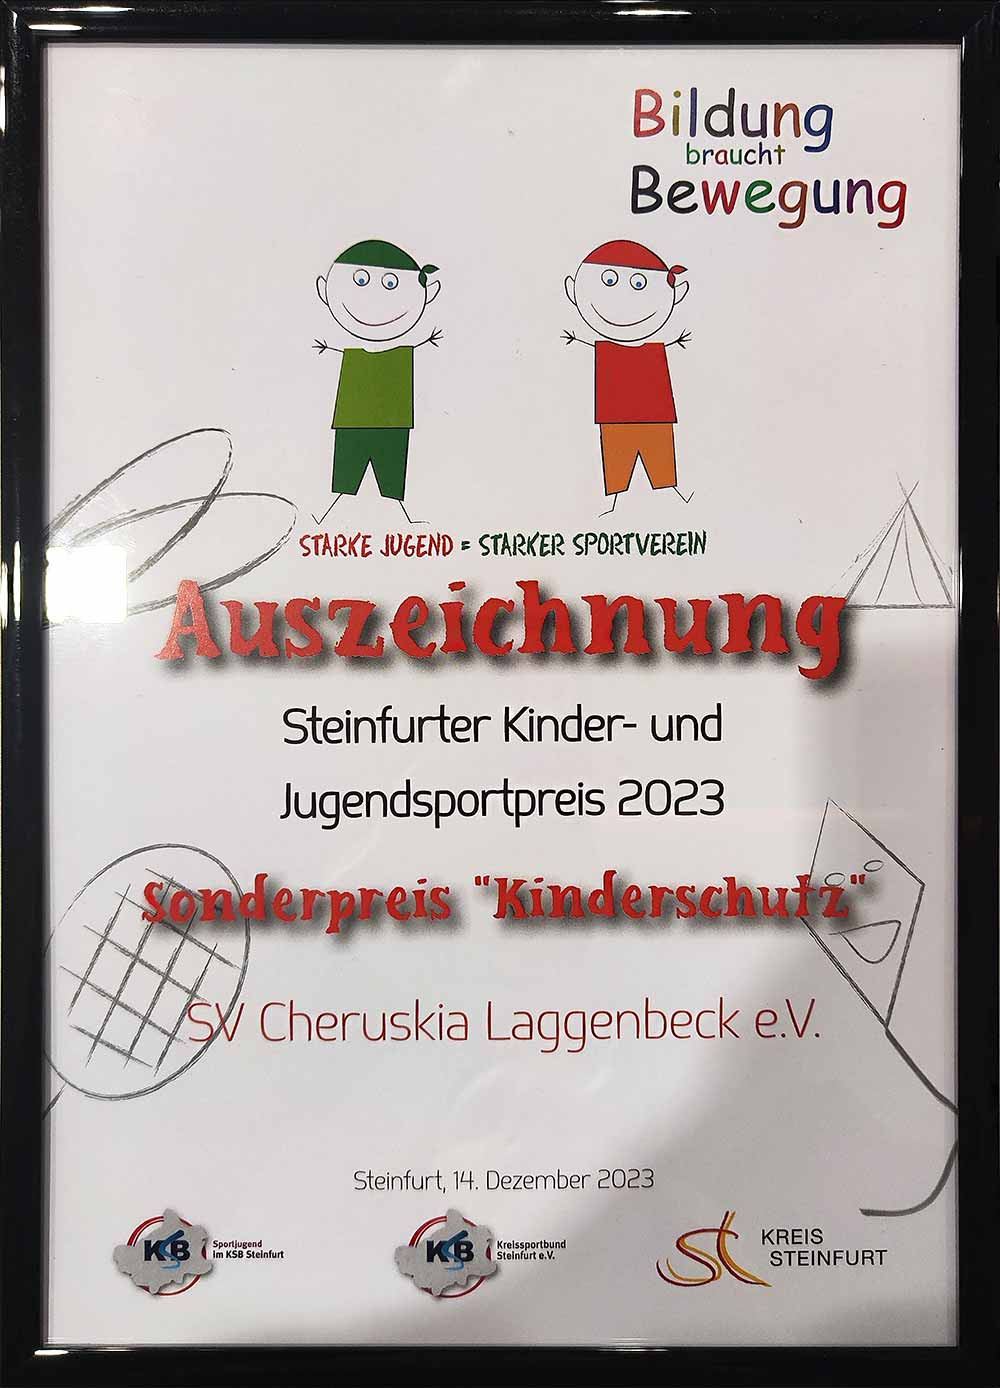 Urkunde des KSB Steinfurt für die Ibbenbürener Kickers - Abteilung des SV Cheruskia Laggenbeck